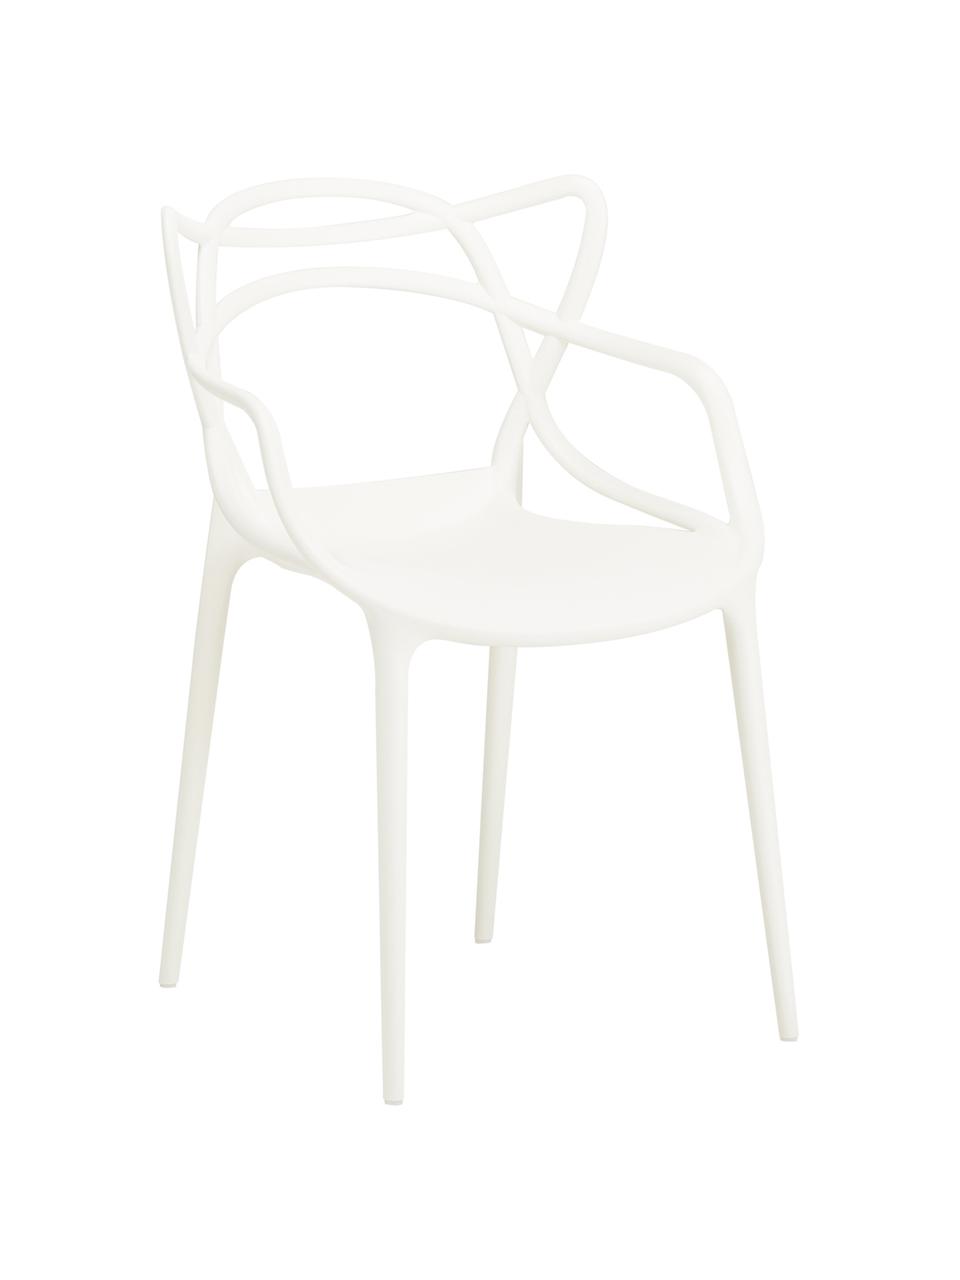 Dizajnová stolička s opierkami Masters, 2 ks, Polypropylén, certifikát Greenguard, Biela, Š 57 x V 84 cm